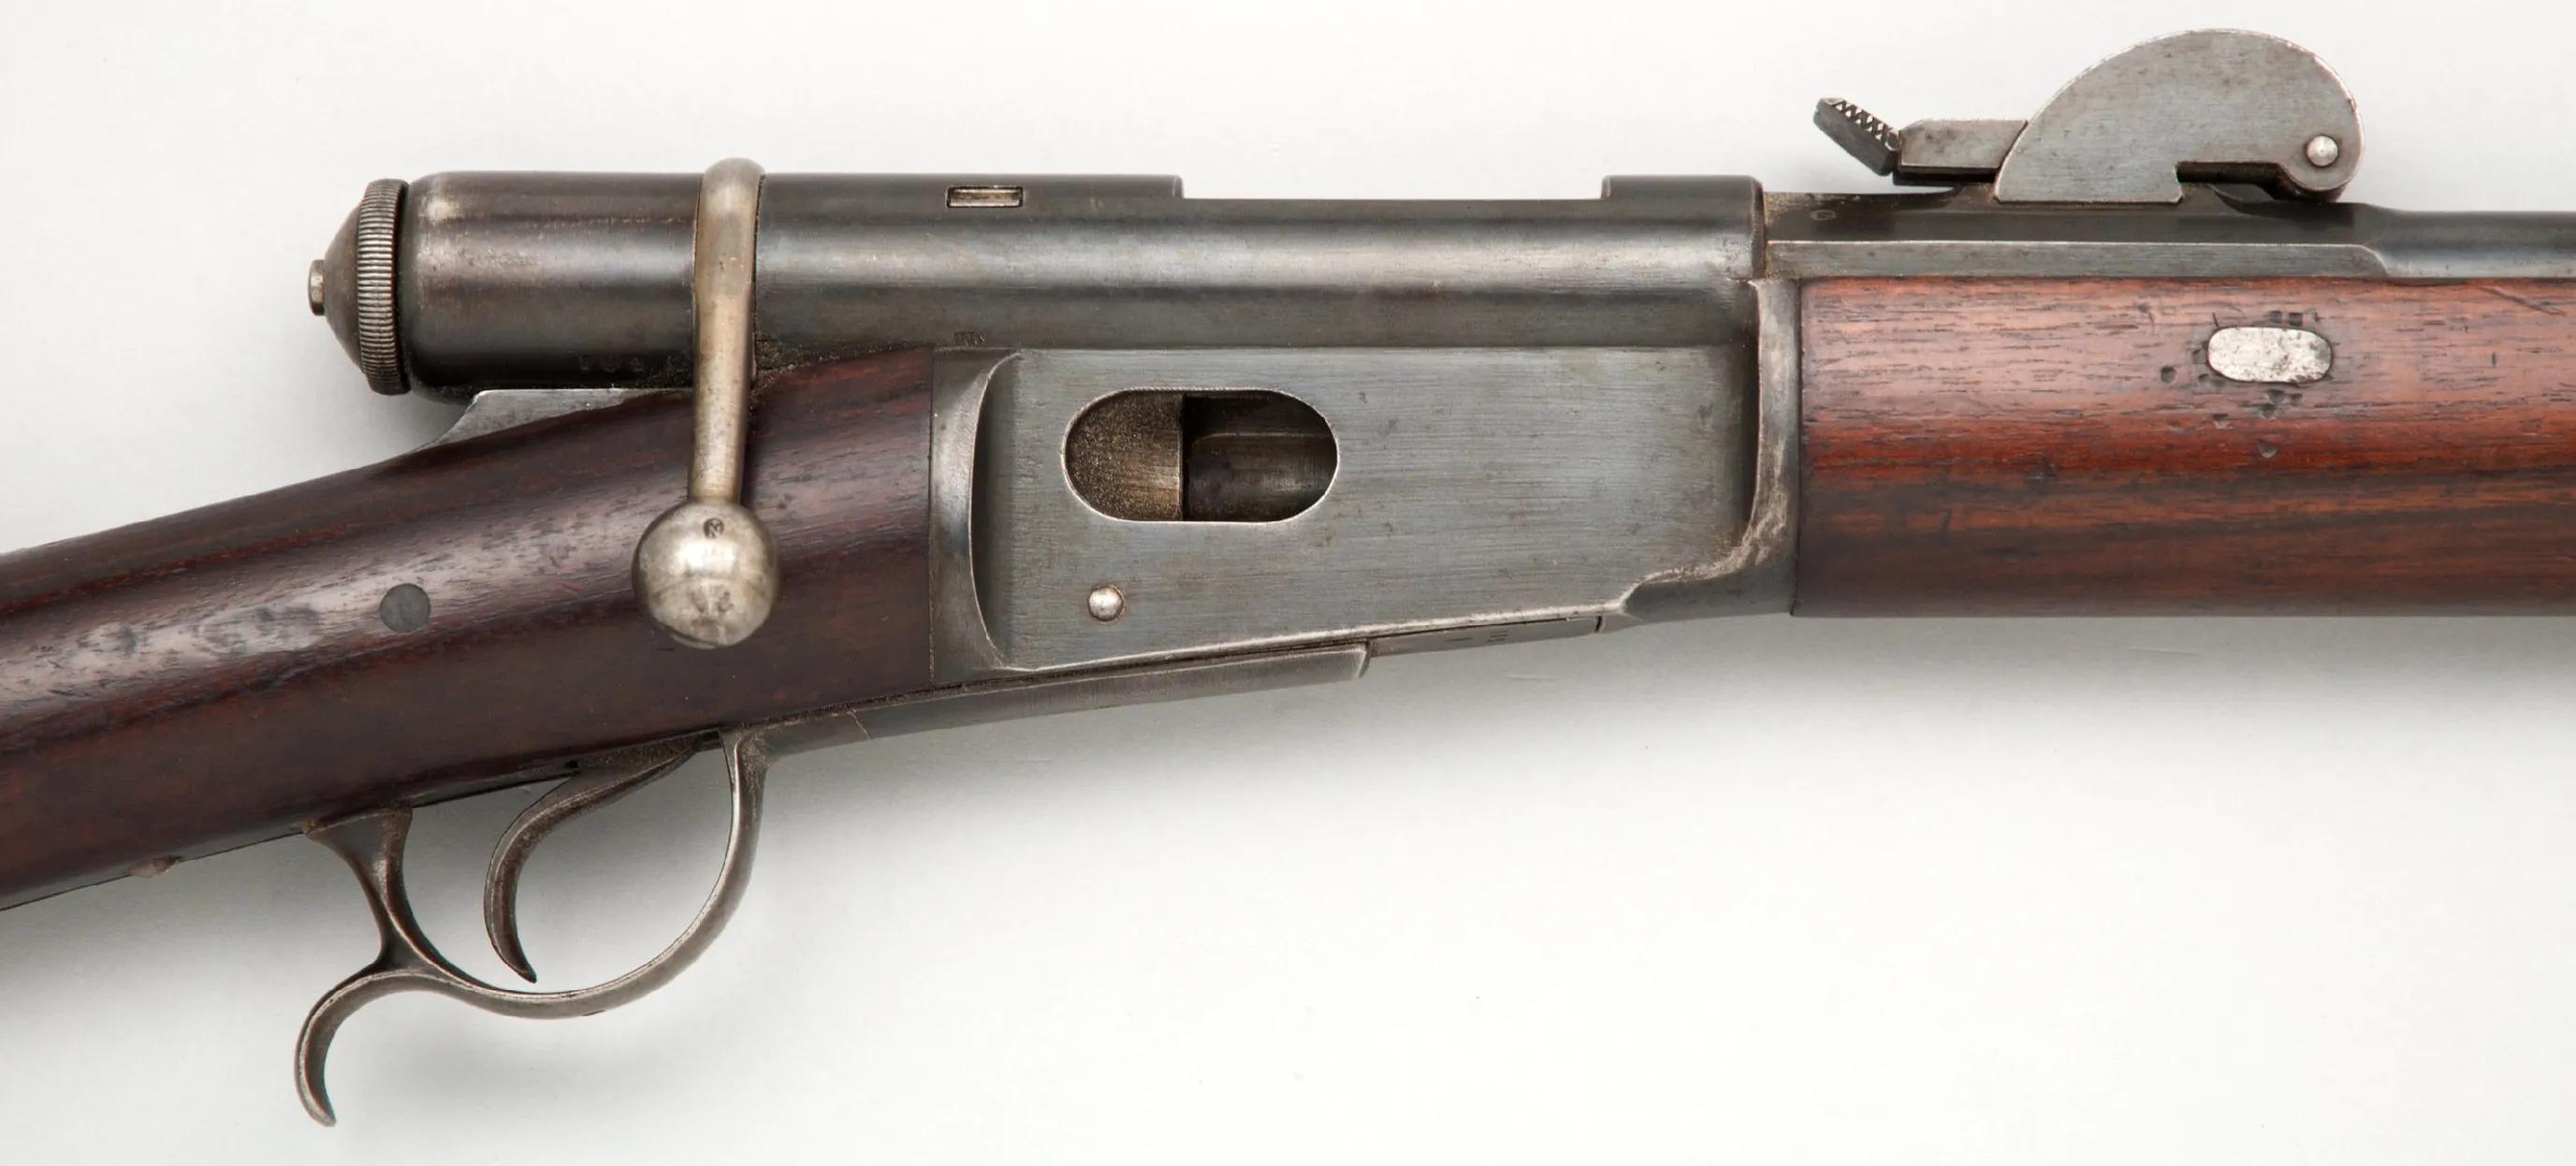 「瑞士枪械史」唯一武装中立国瑞士的早期军队和军工的发展历史